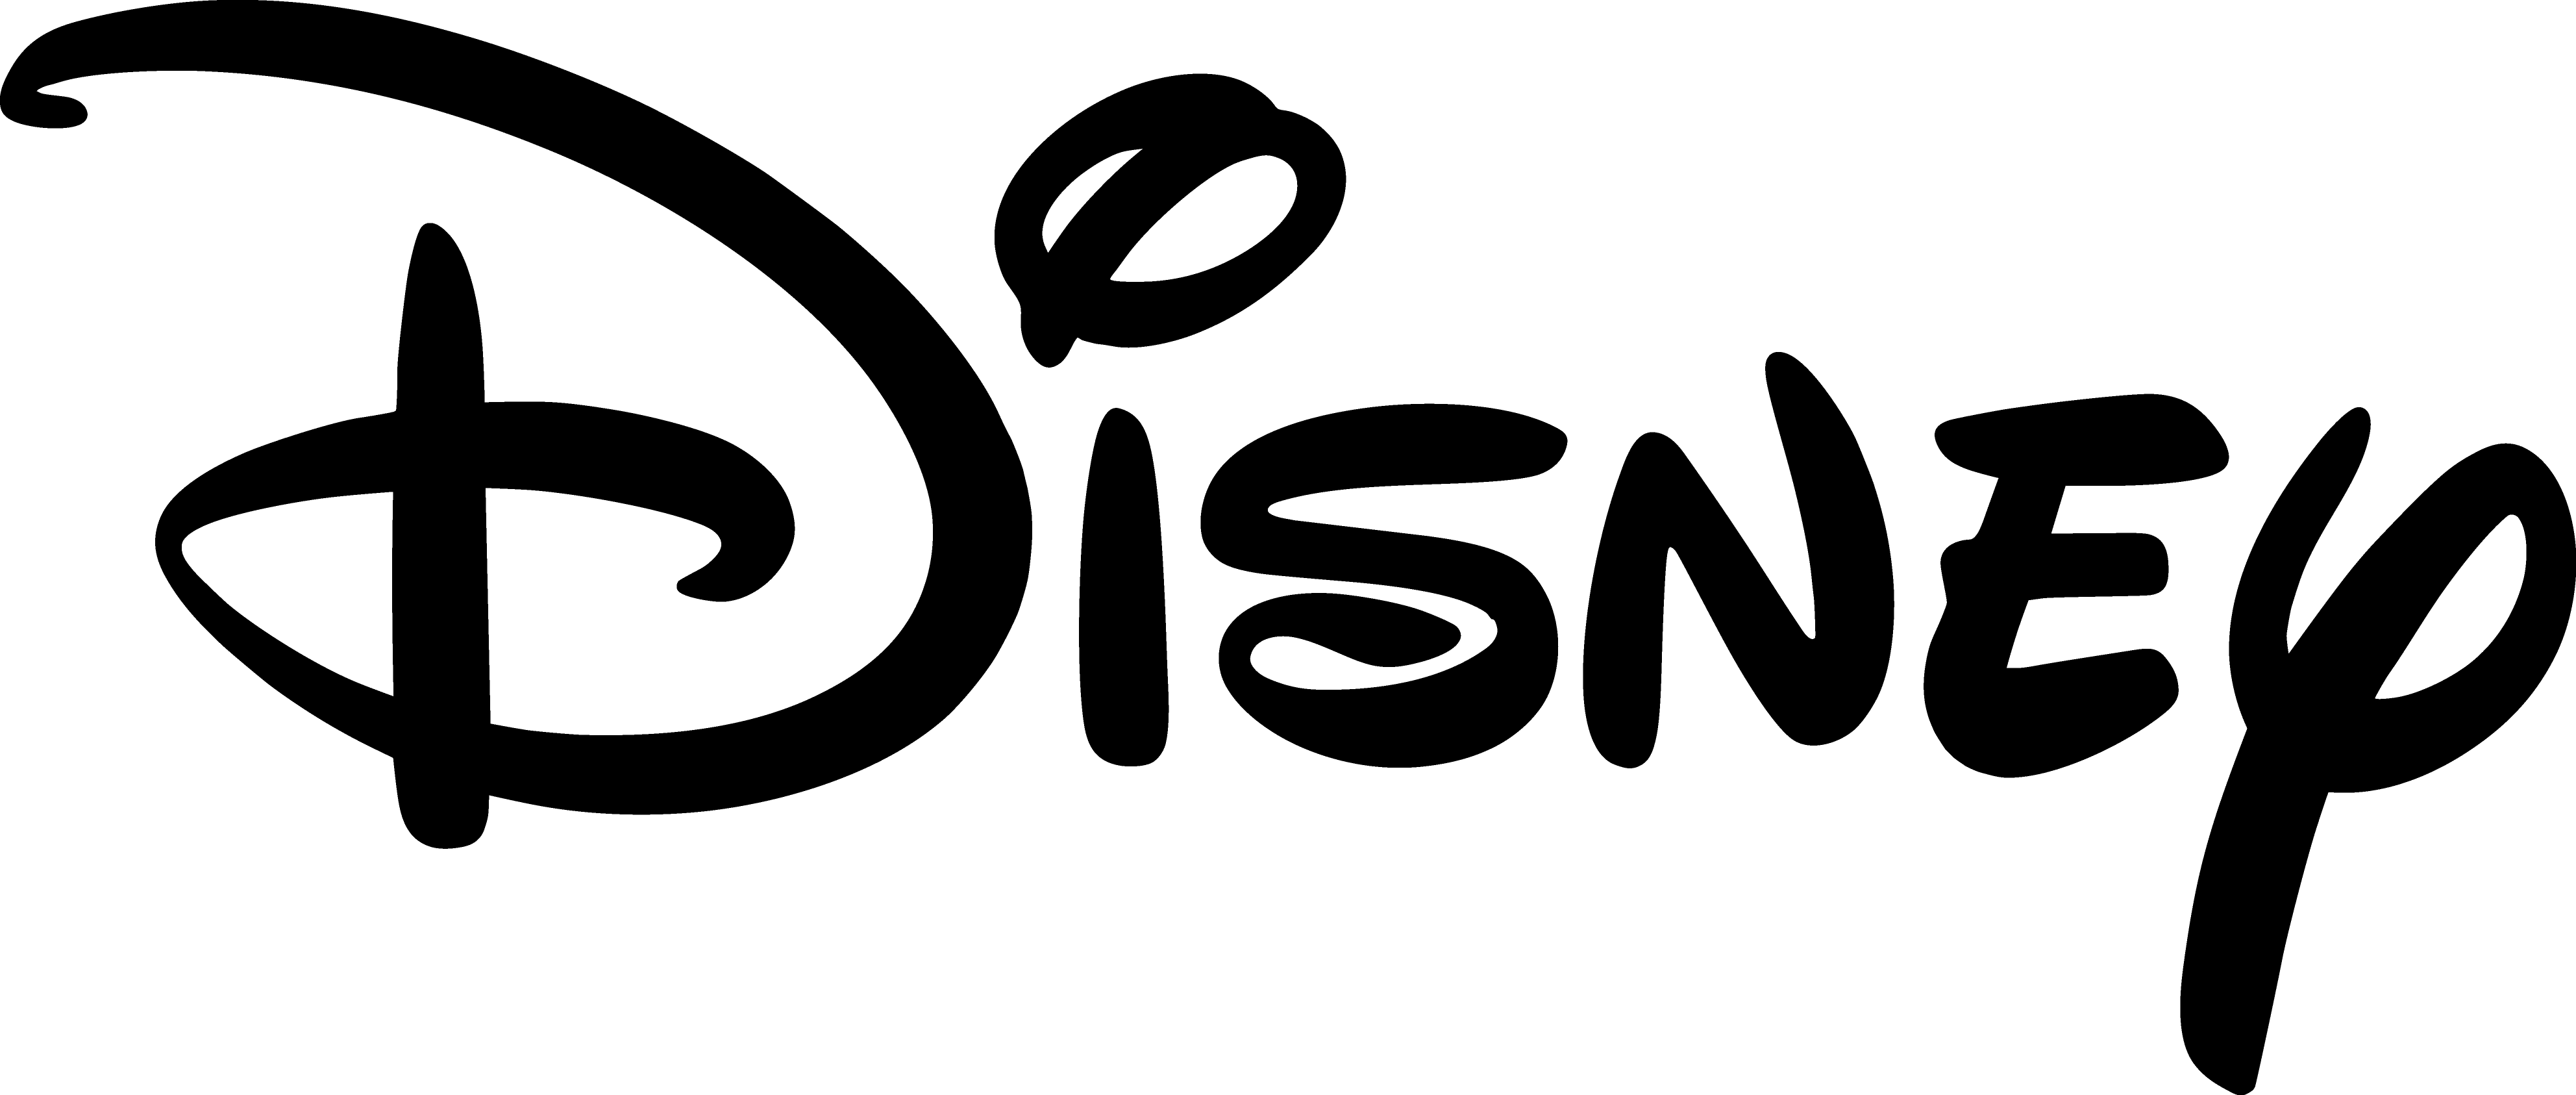 Disne Logo - Walt Disney logo PNG images free download